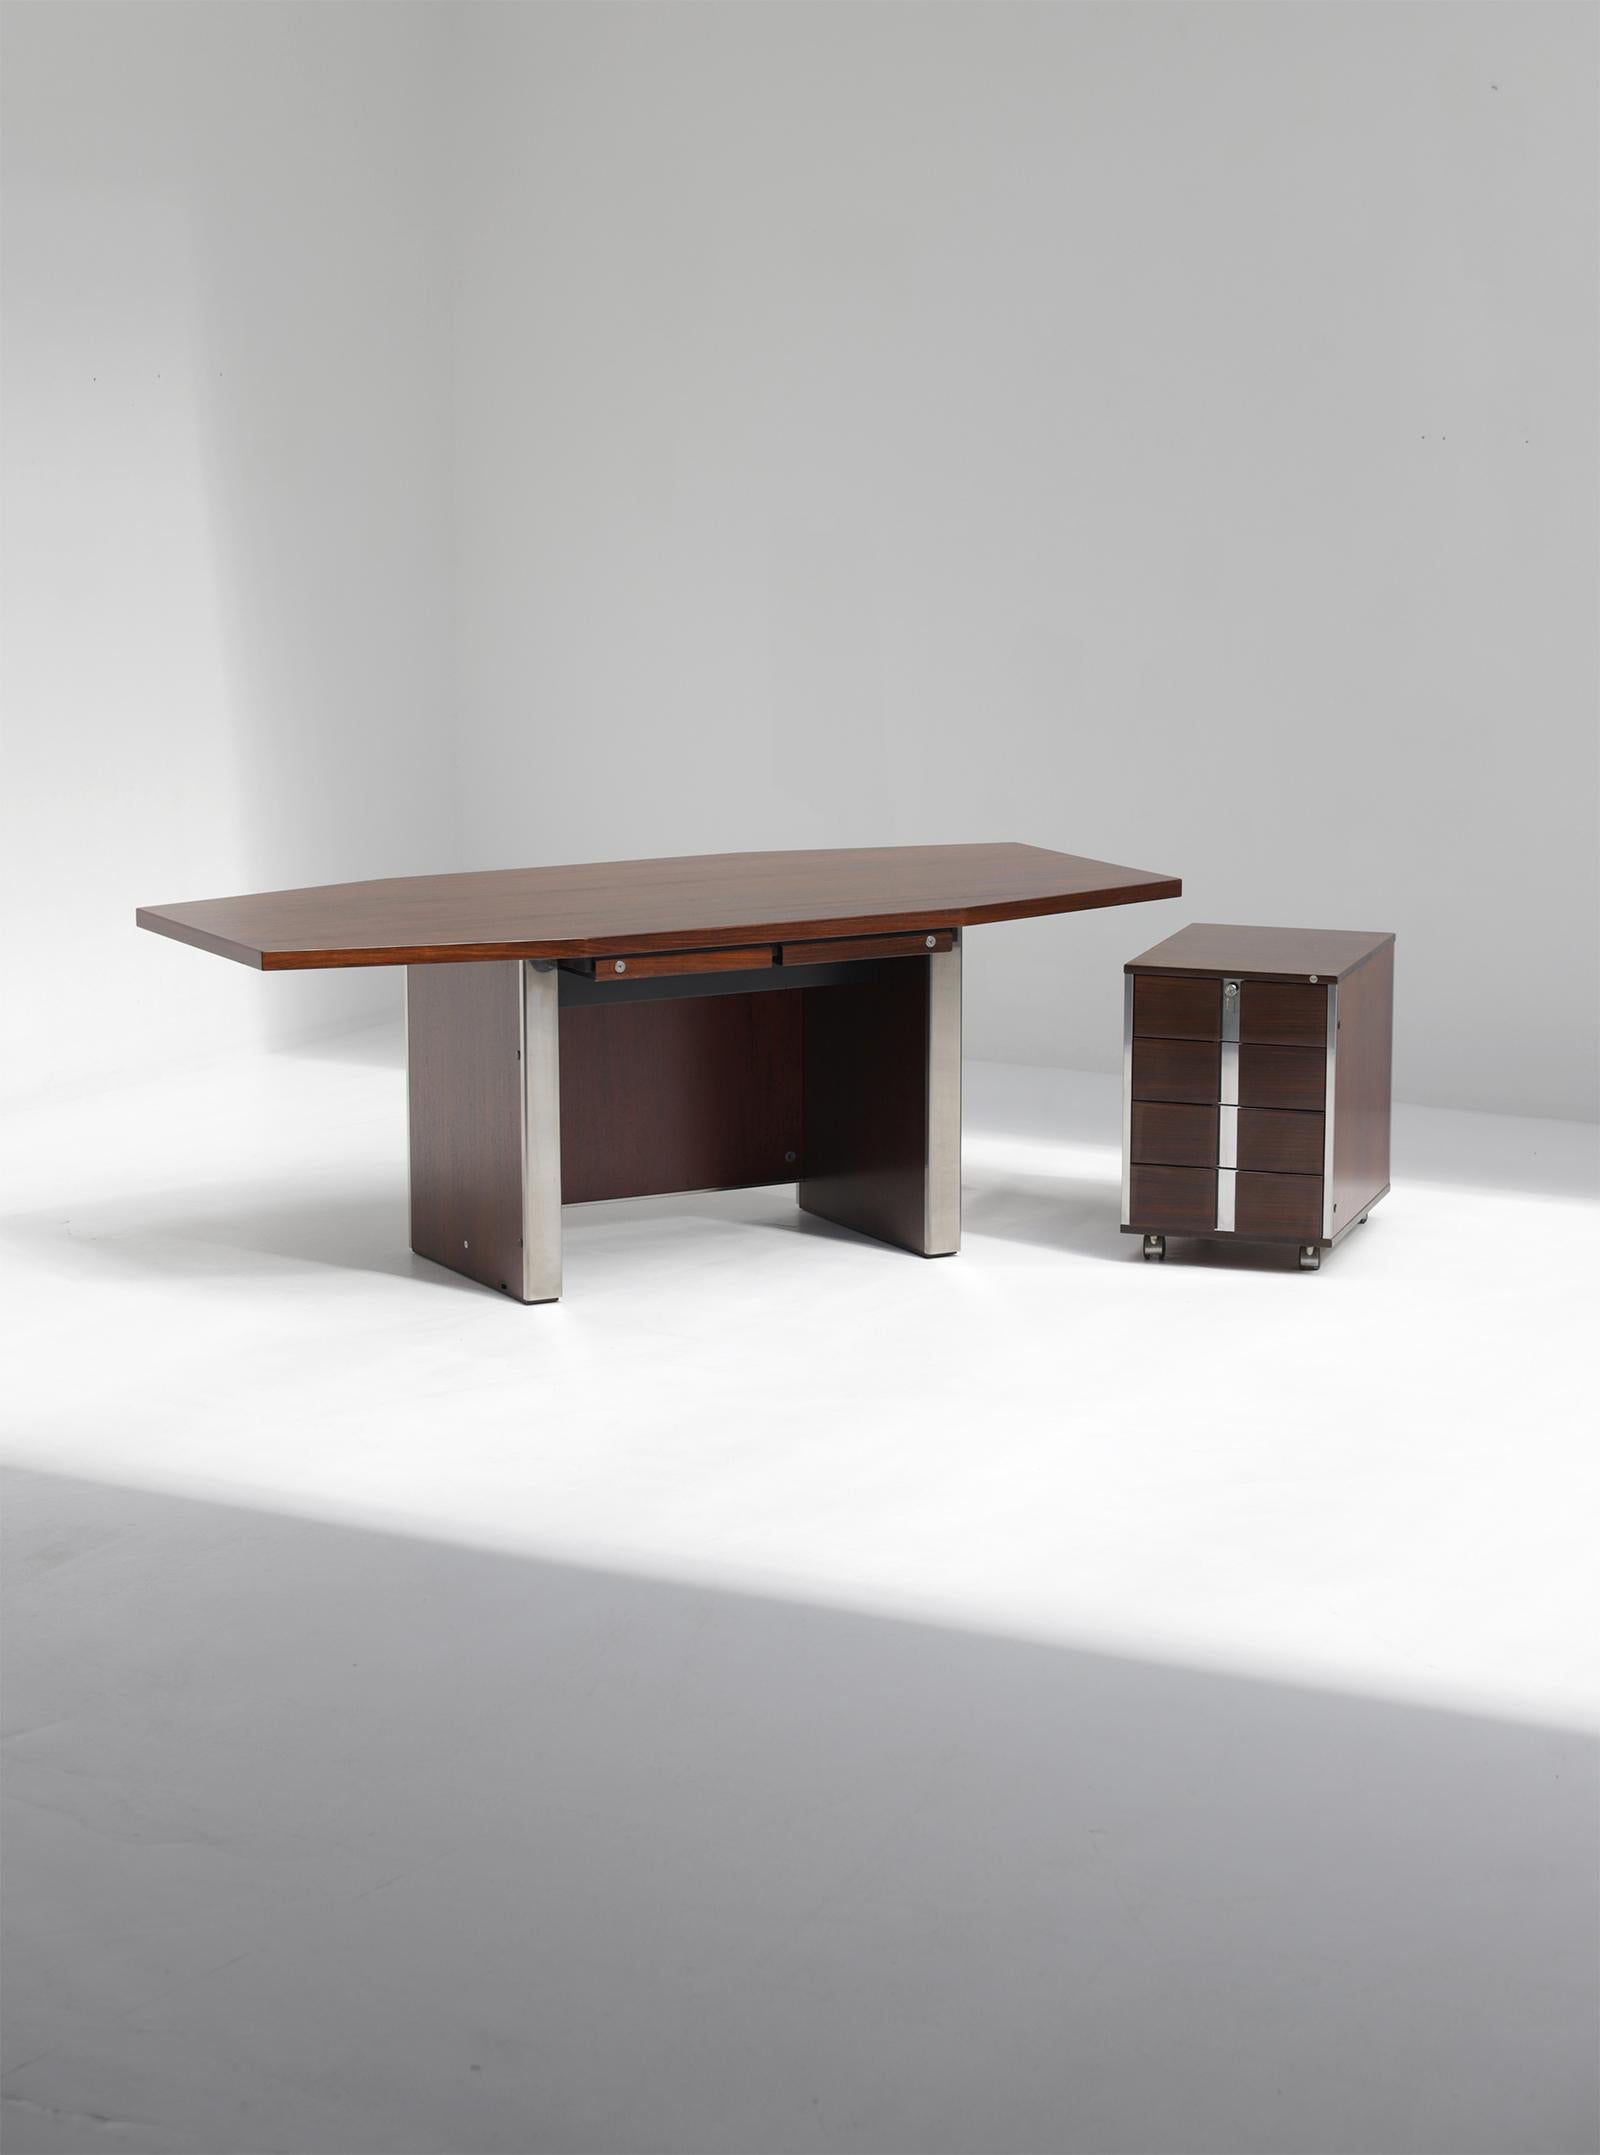 Mid-Century Modern Schreibtisch von Desk Ennio Fazioli & Ufficio Tecnico für MIM, Italien 1960er Jahre. Dieser Schreibtisch ist aus dunklem, warm gefärbtem Holz gefertigt und hat verchromte Beine. Unter der Tischplatte befinden sich 2 kleine